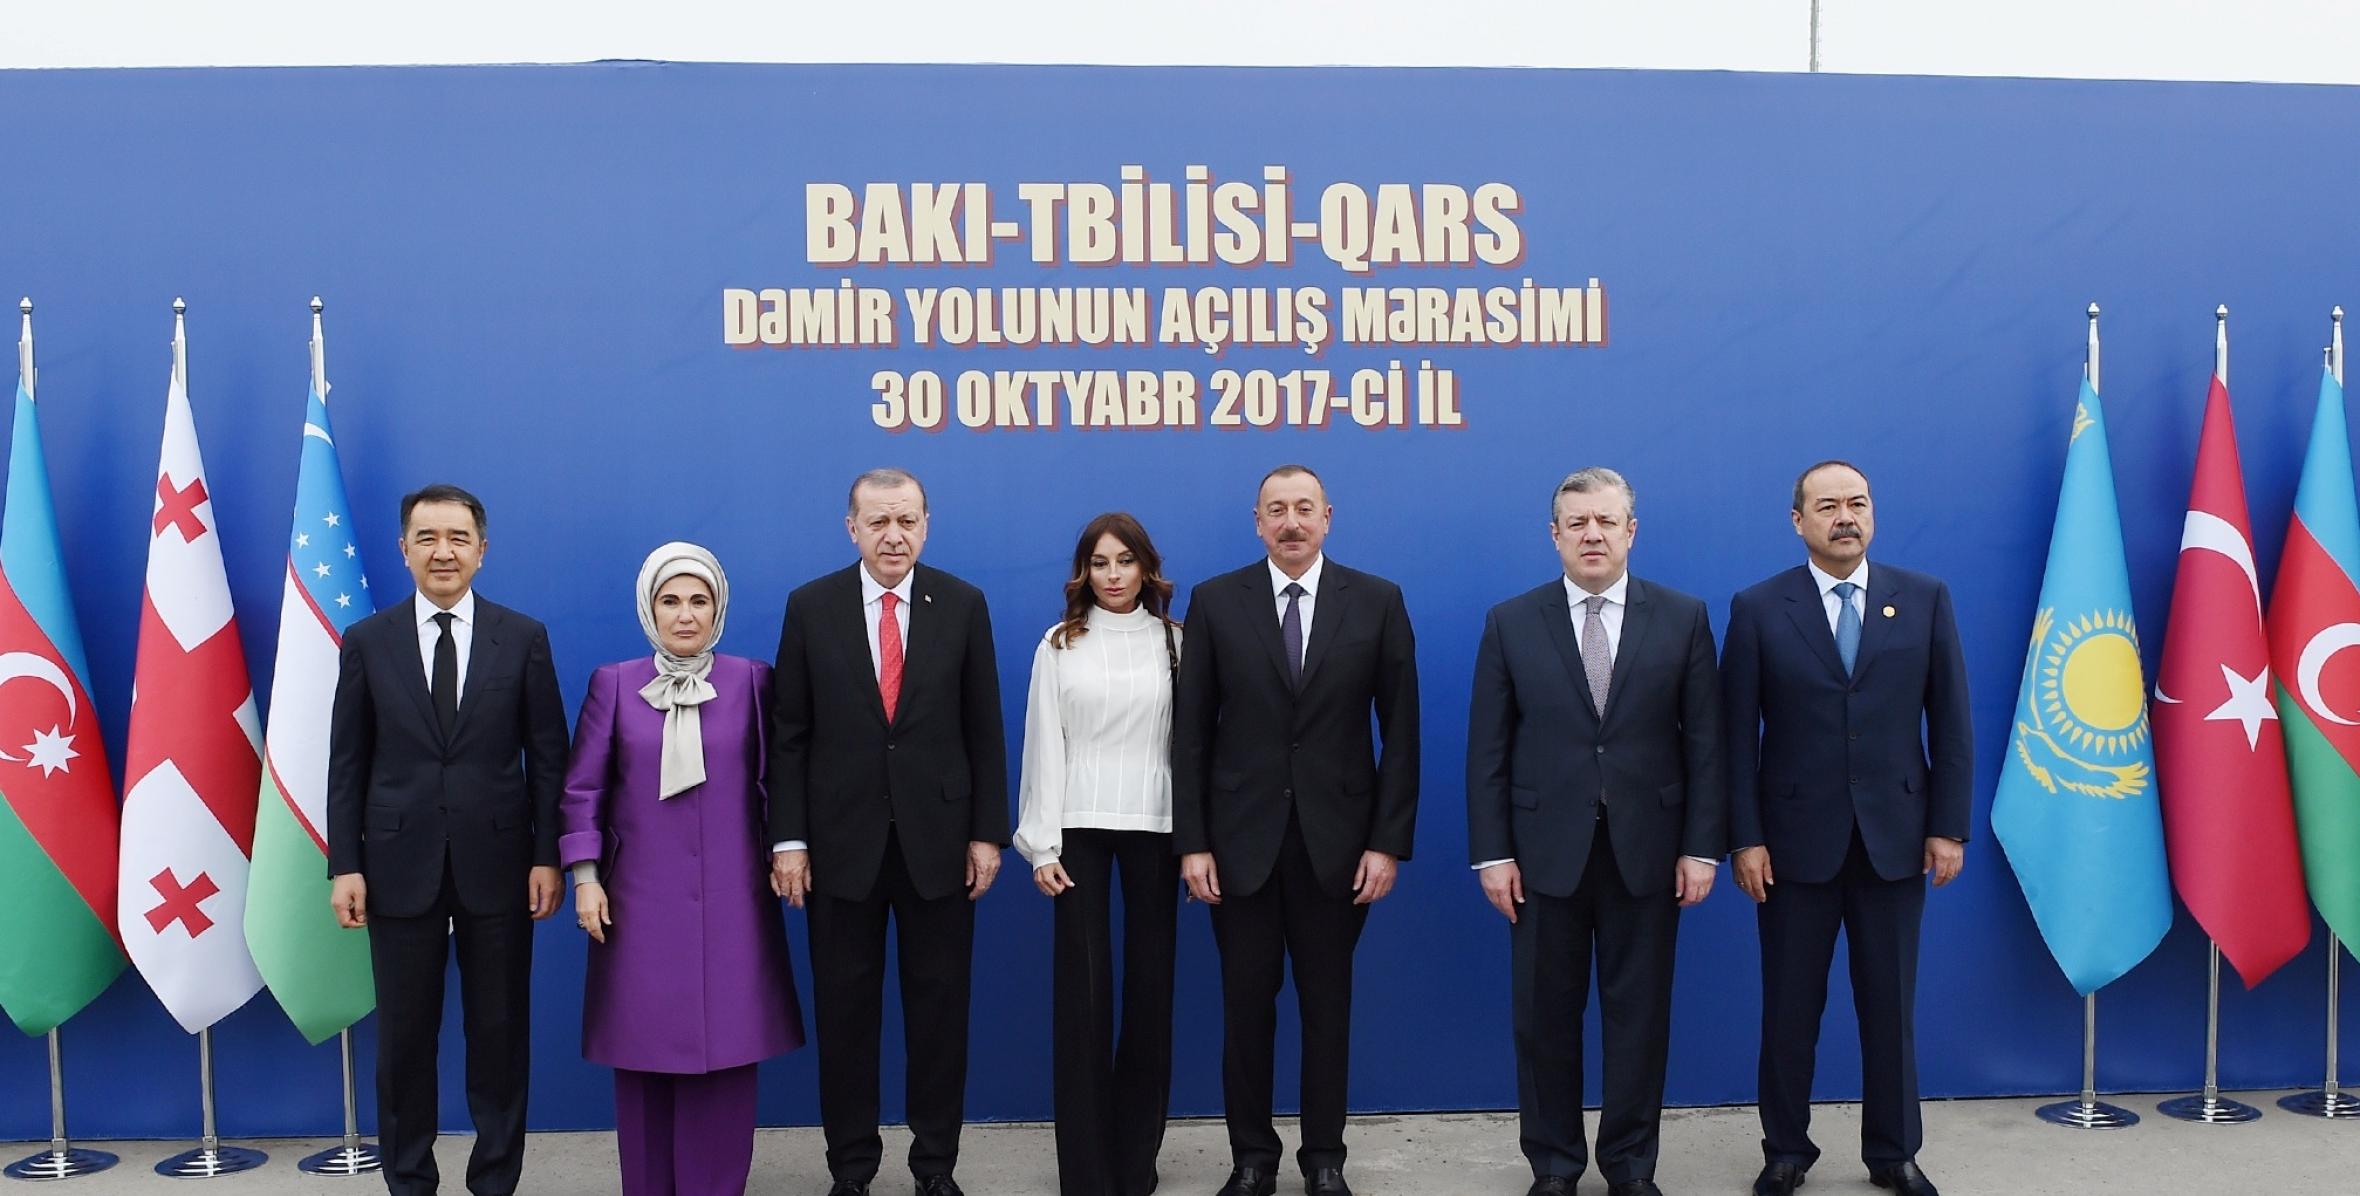 Ильхам Алиев принял участие в церемонии открытия железной дороги Баку-Тбилиси-Карс